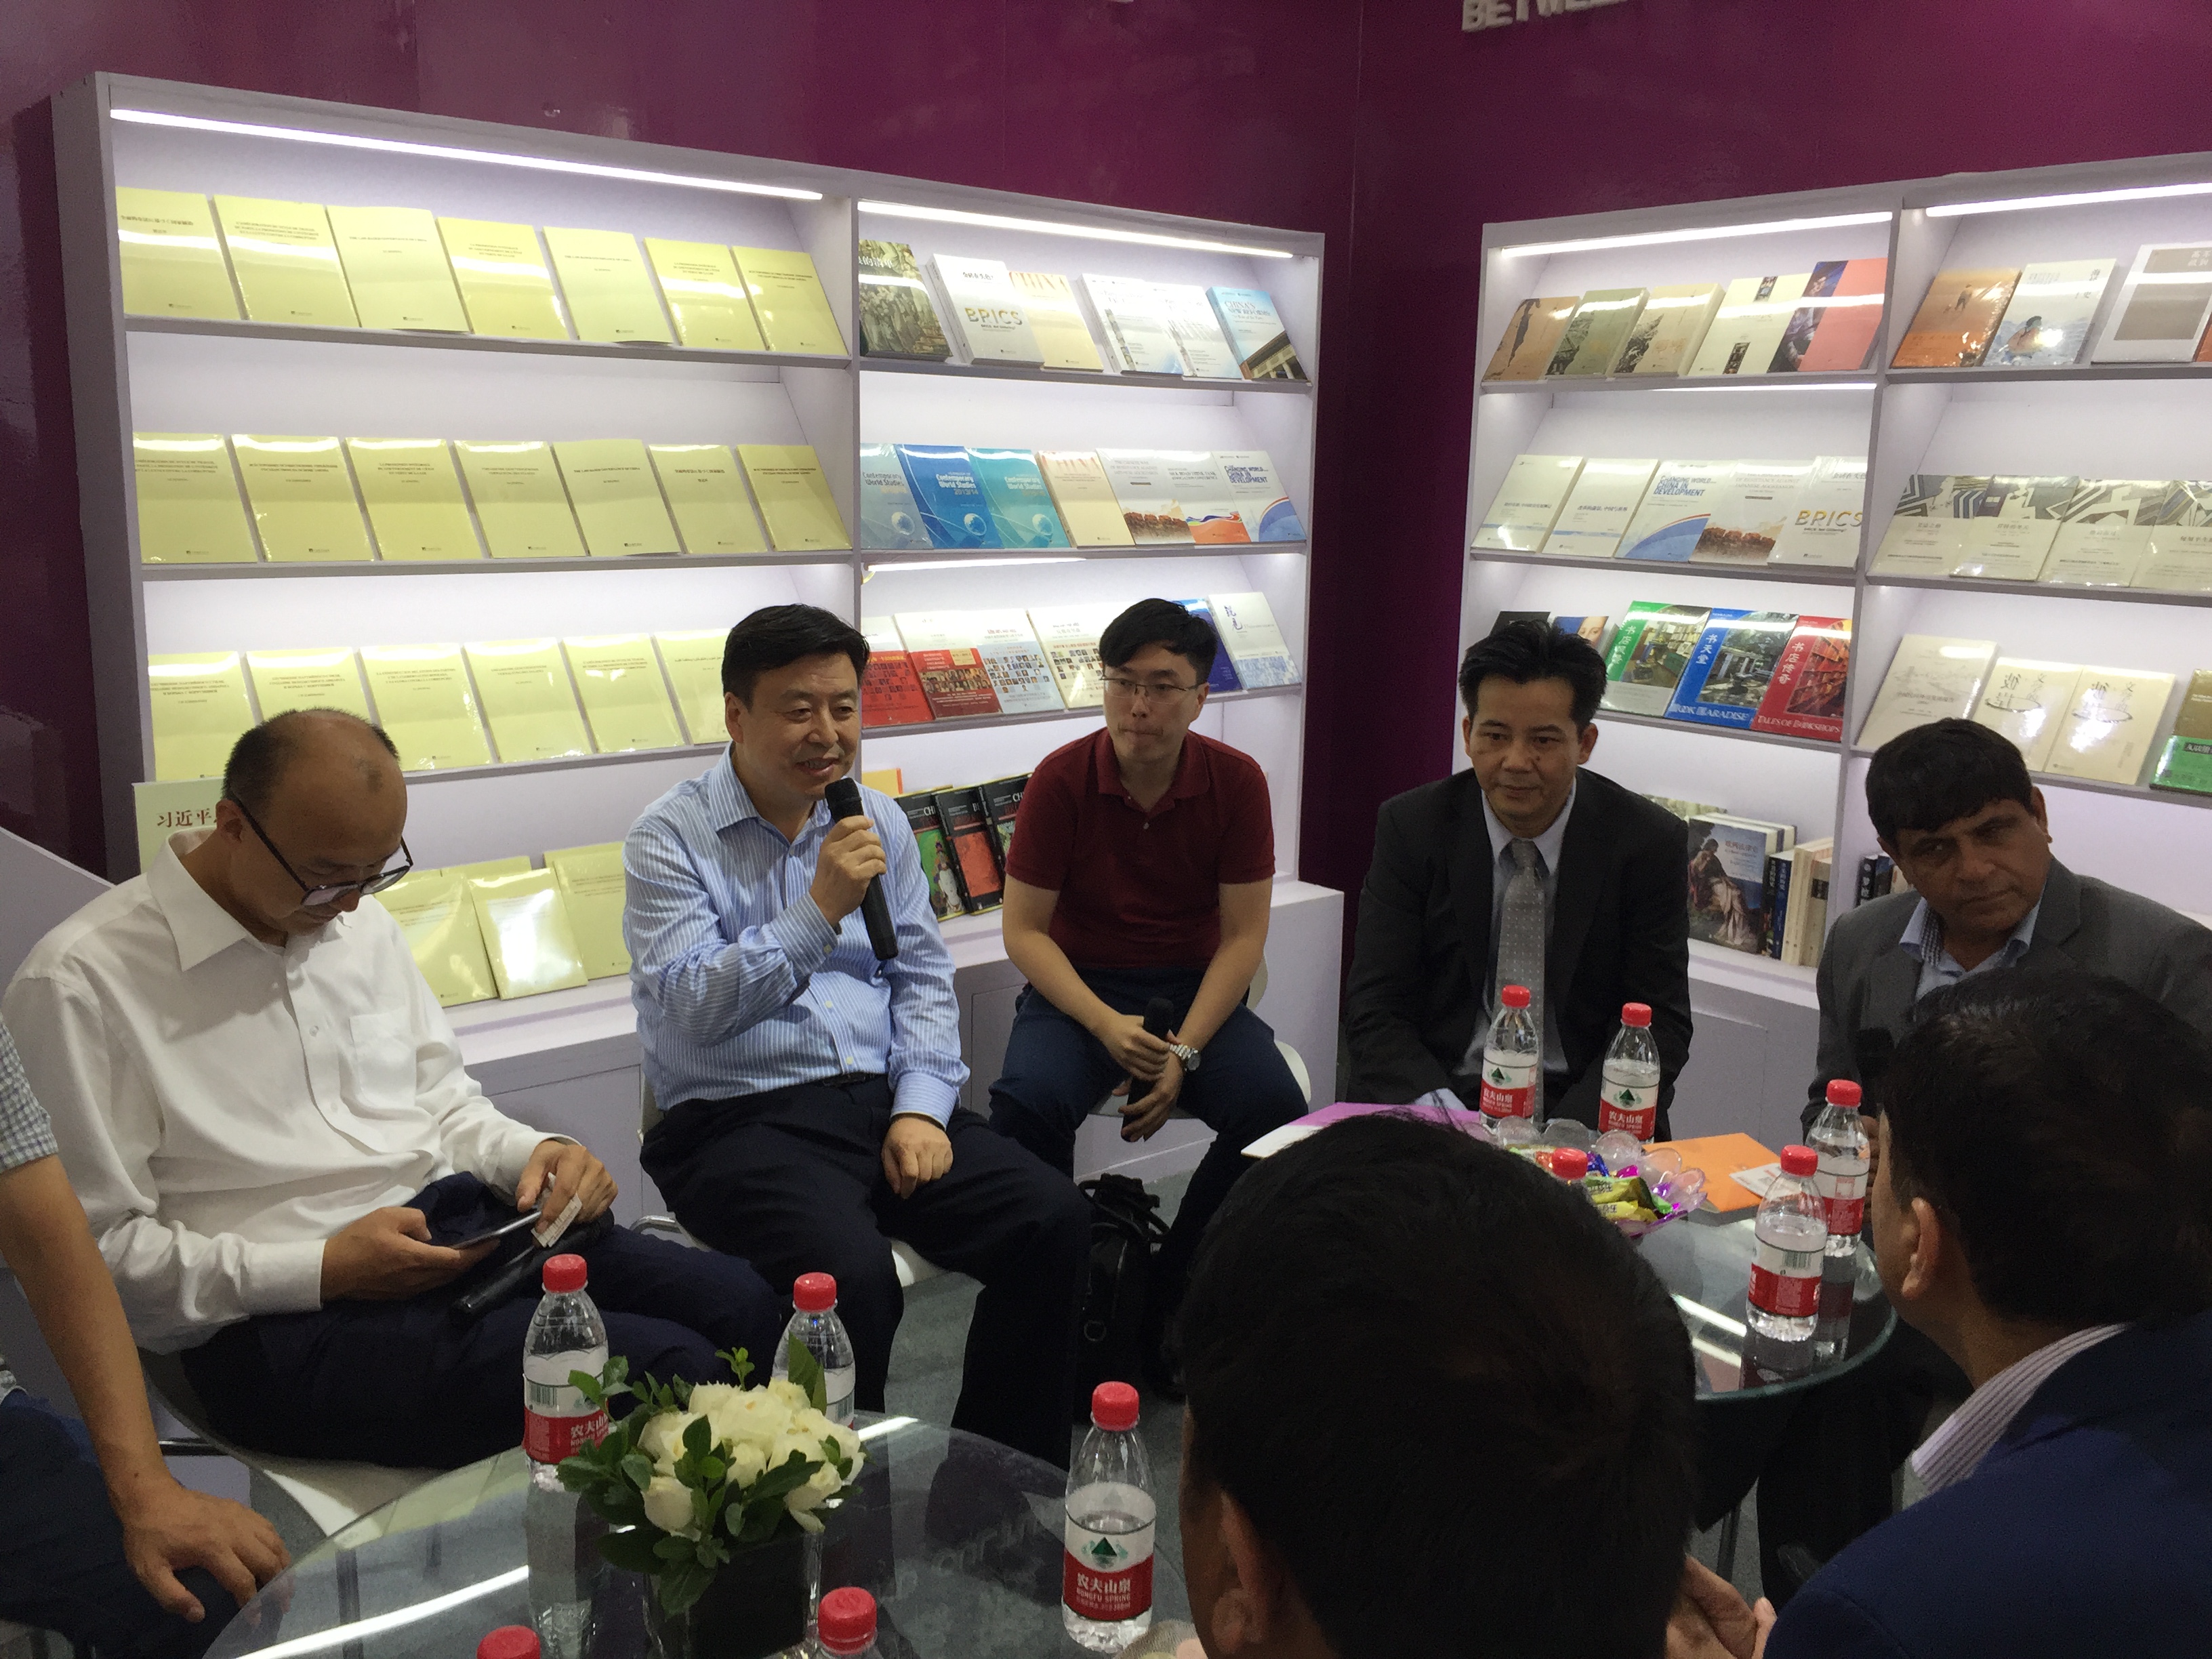 尼泊尔共产党代表团北京国际图书博览会期间访